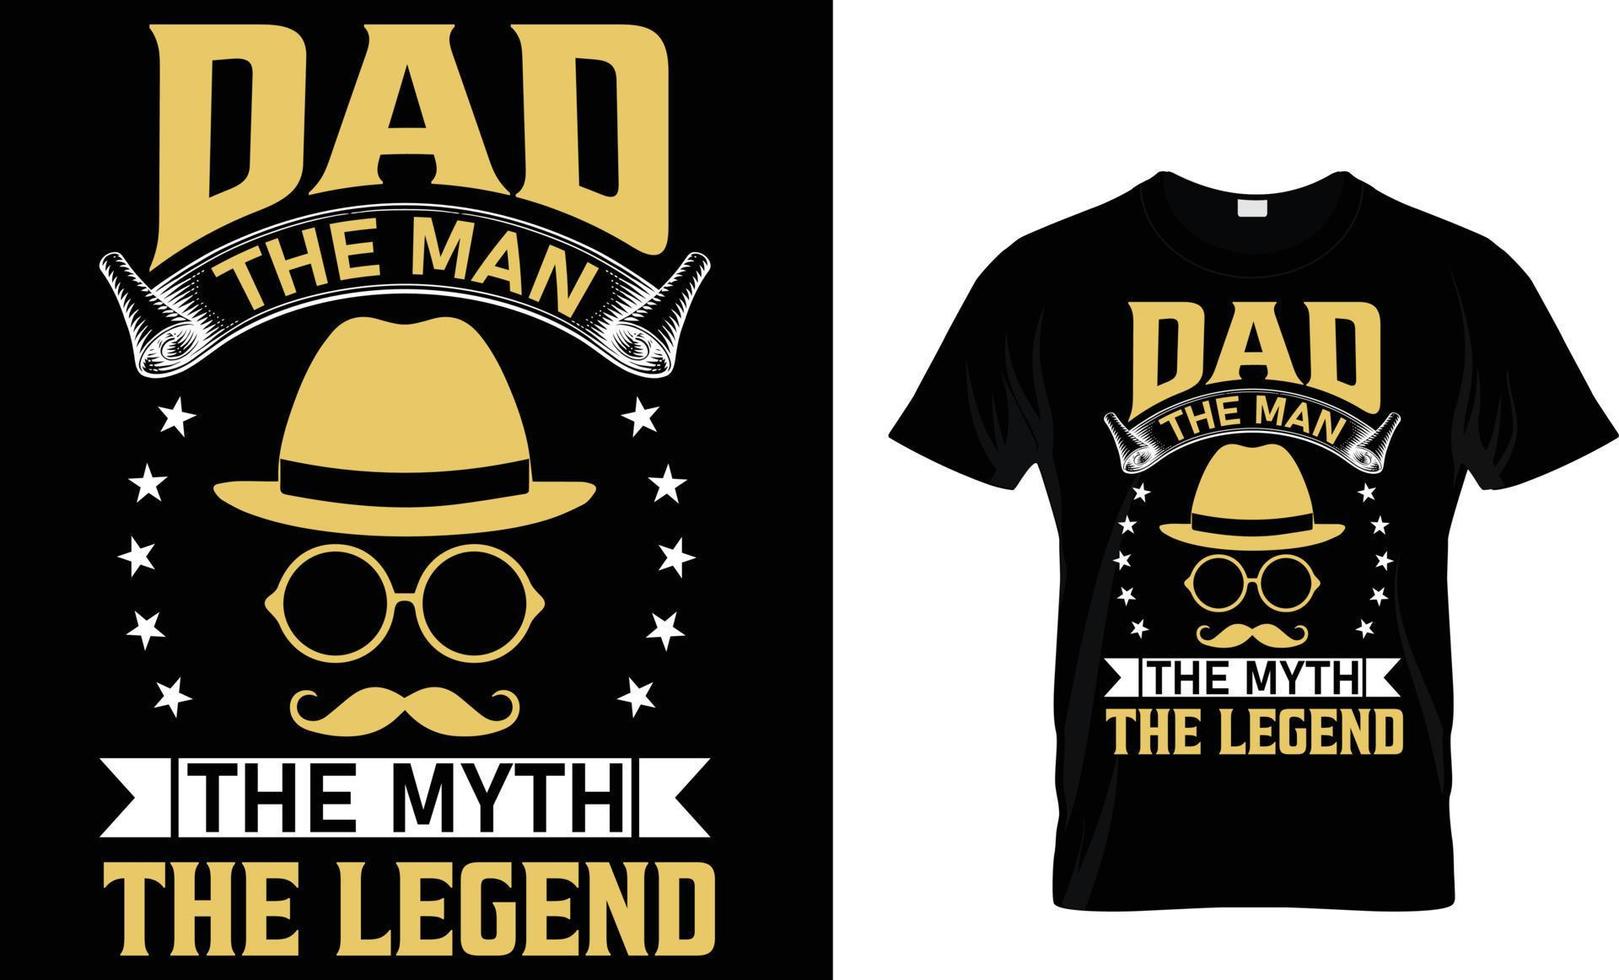 design della t-shirt tipografica per la festa del papà vettore